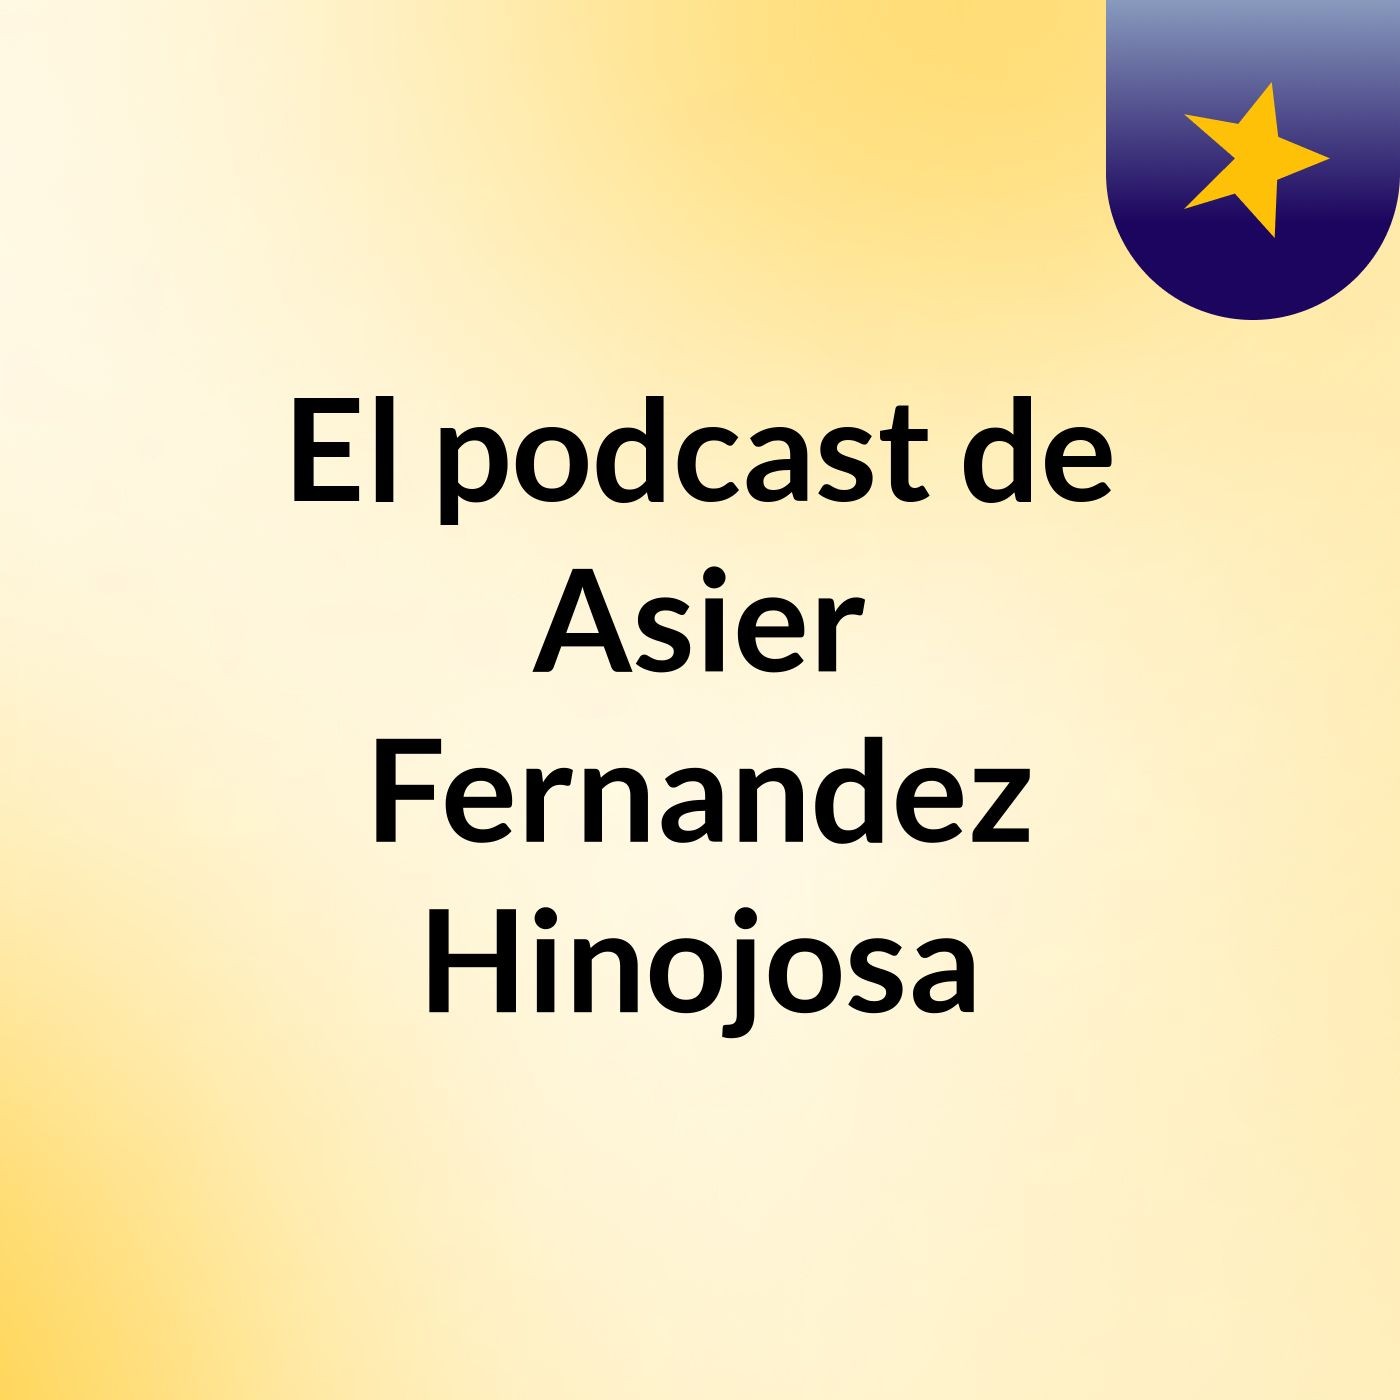 Episodio 2 - El podcast de Asier Fernandez Hinojosa